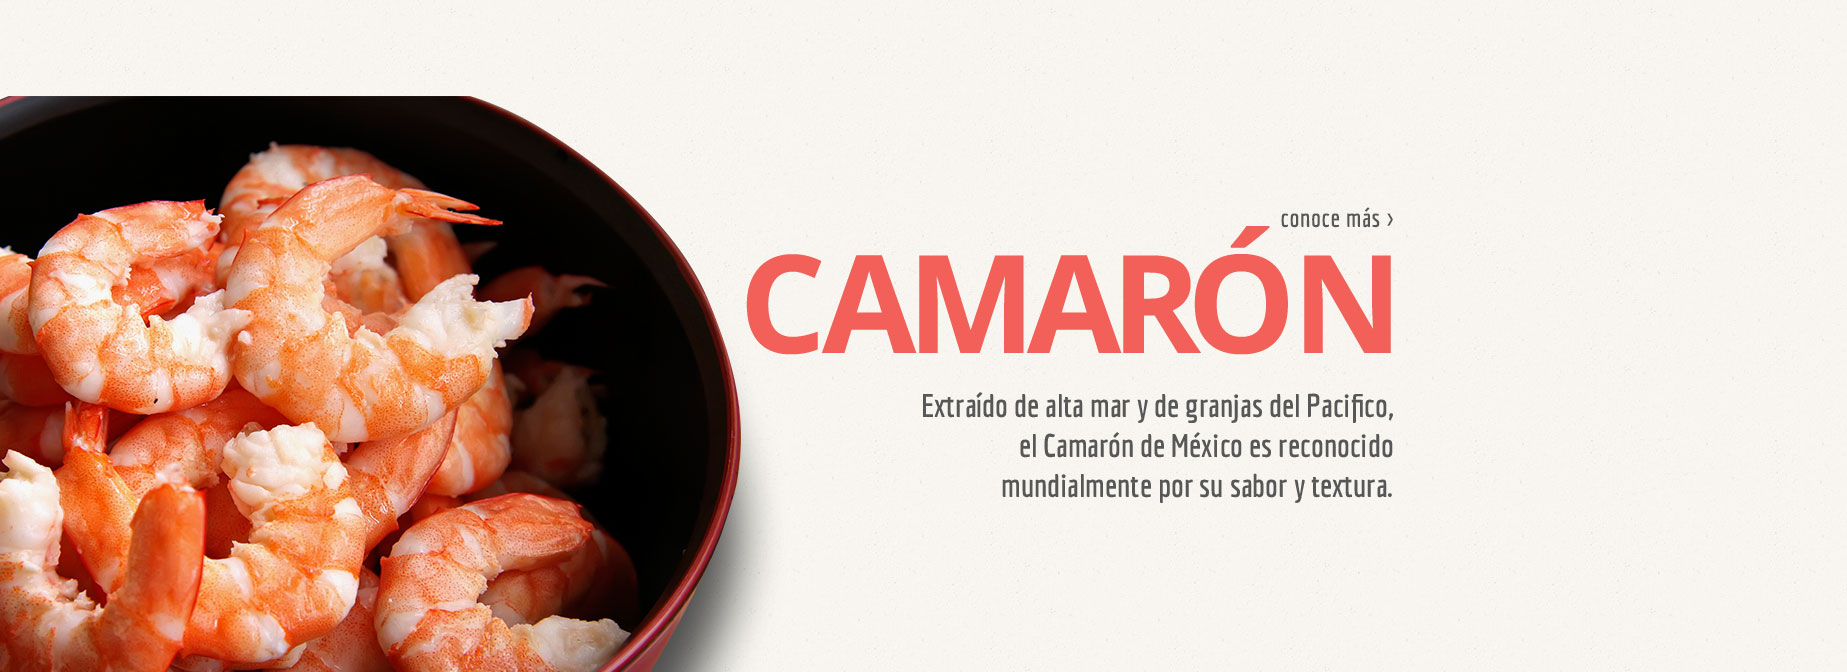 CAMARON - Extraído de alta mar y de granjas del Pacífico, el Camarón de México es reconocido mundialmente por su sabor y textura.